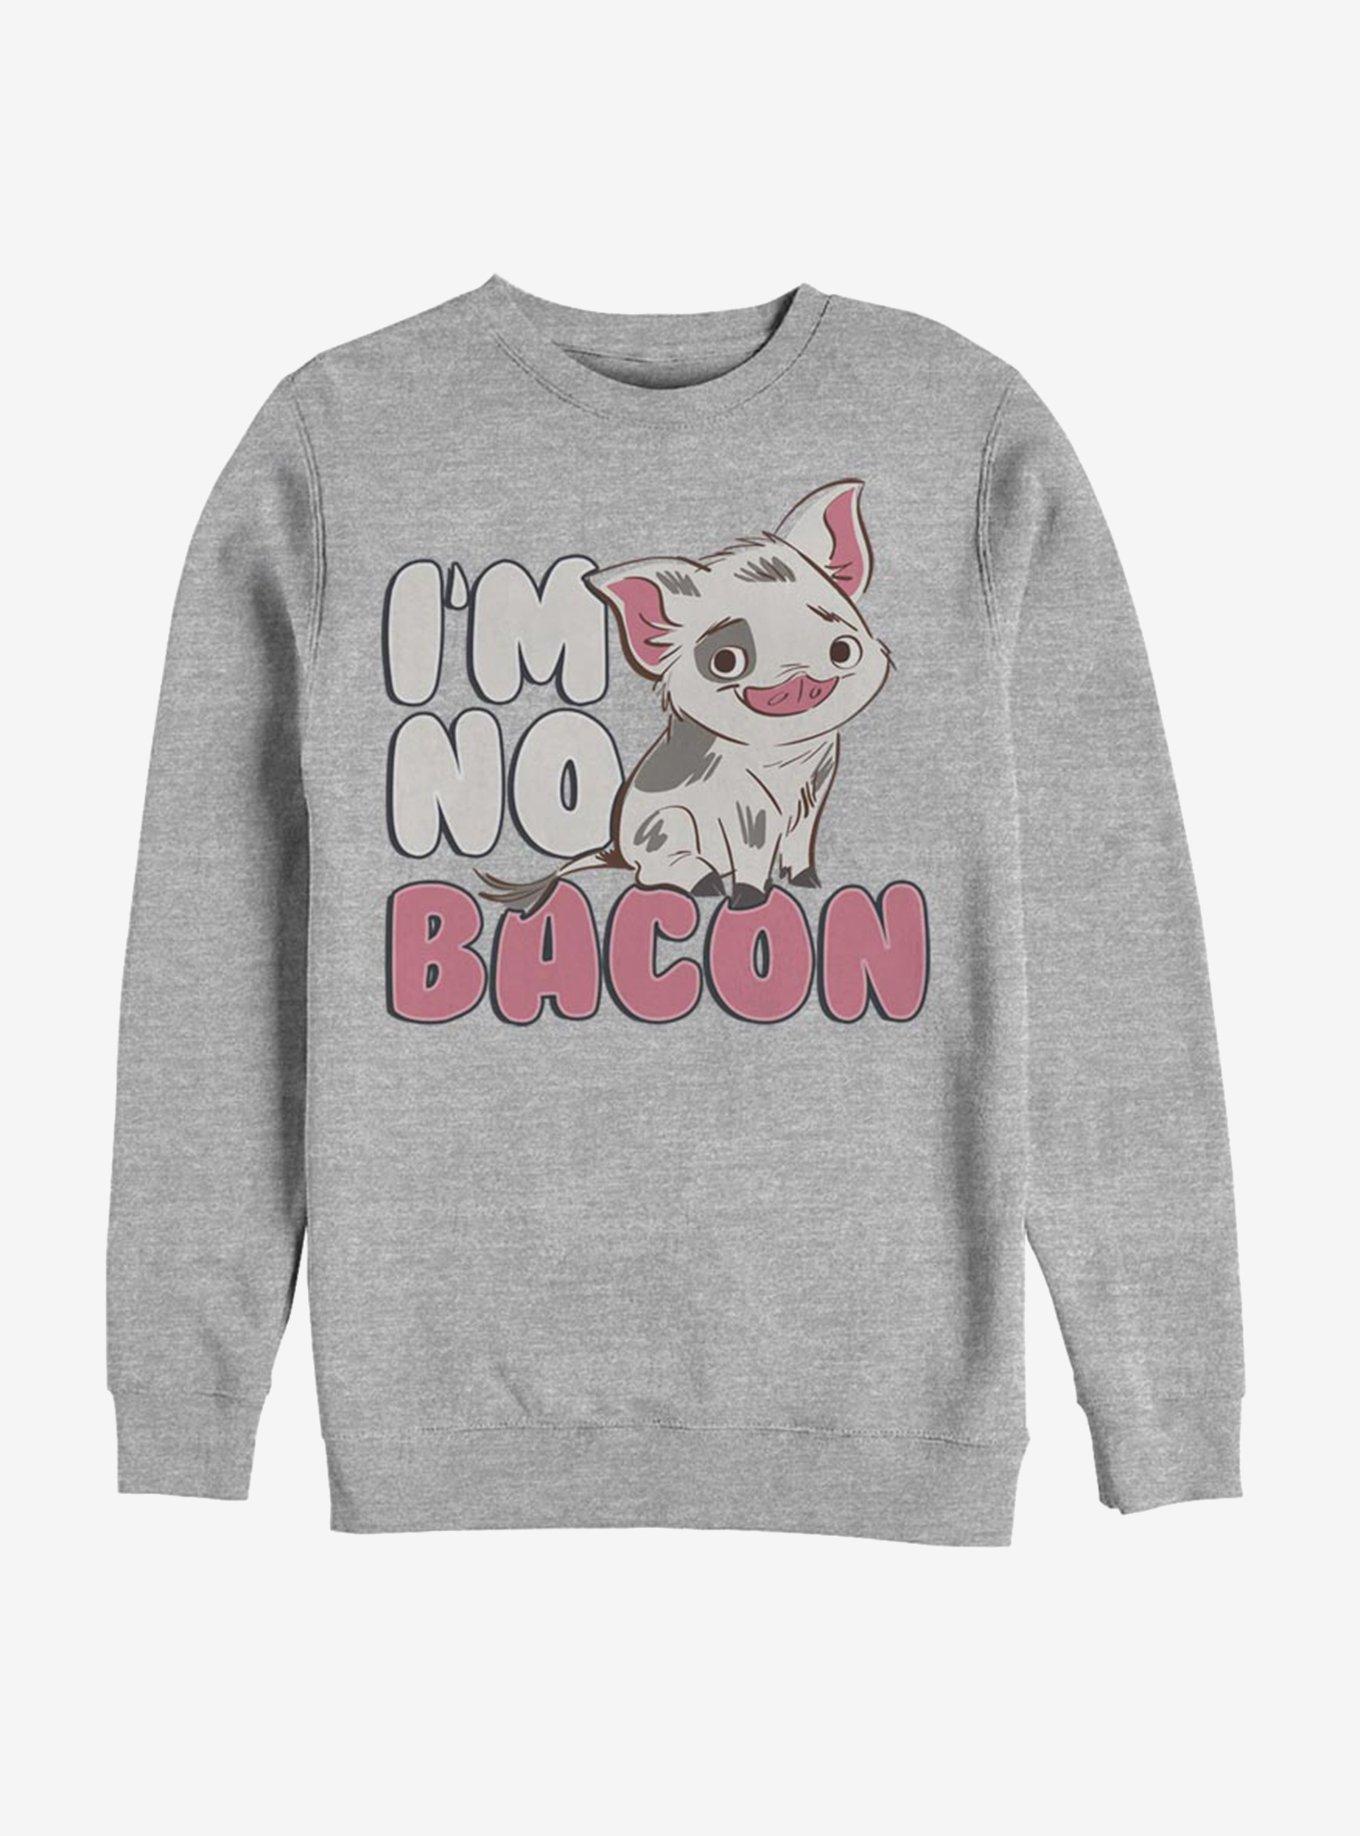 Disney Moana Not Bacon Sweatshirt, ATH HTR, hi-res